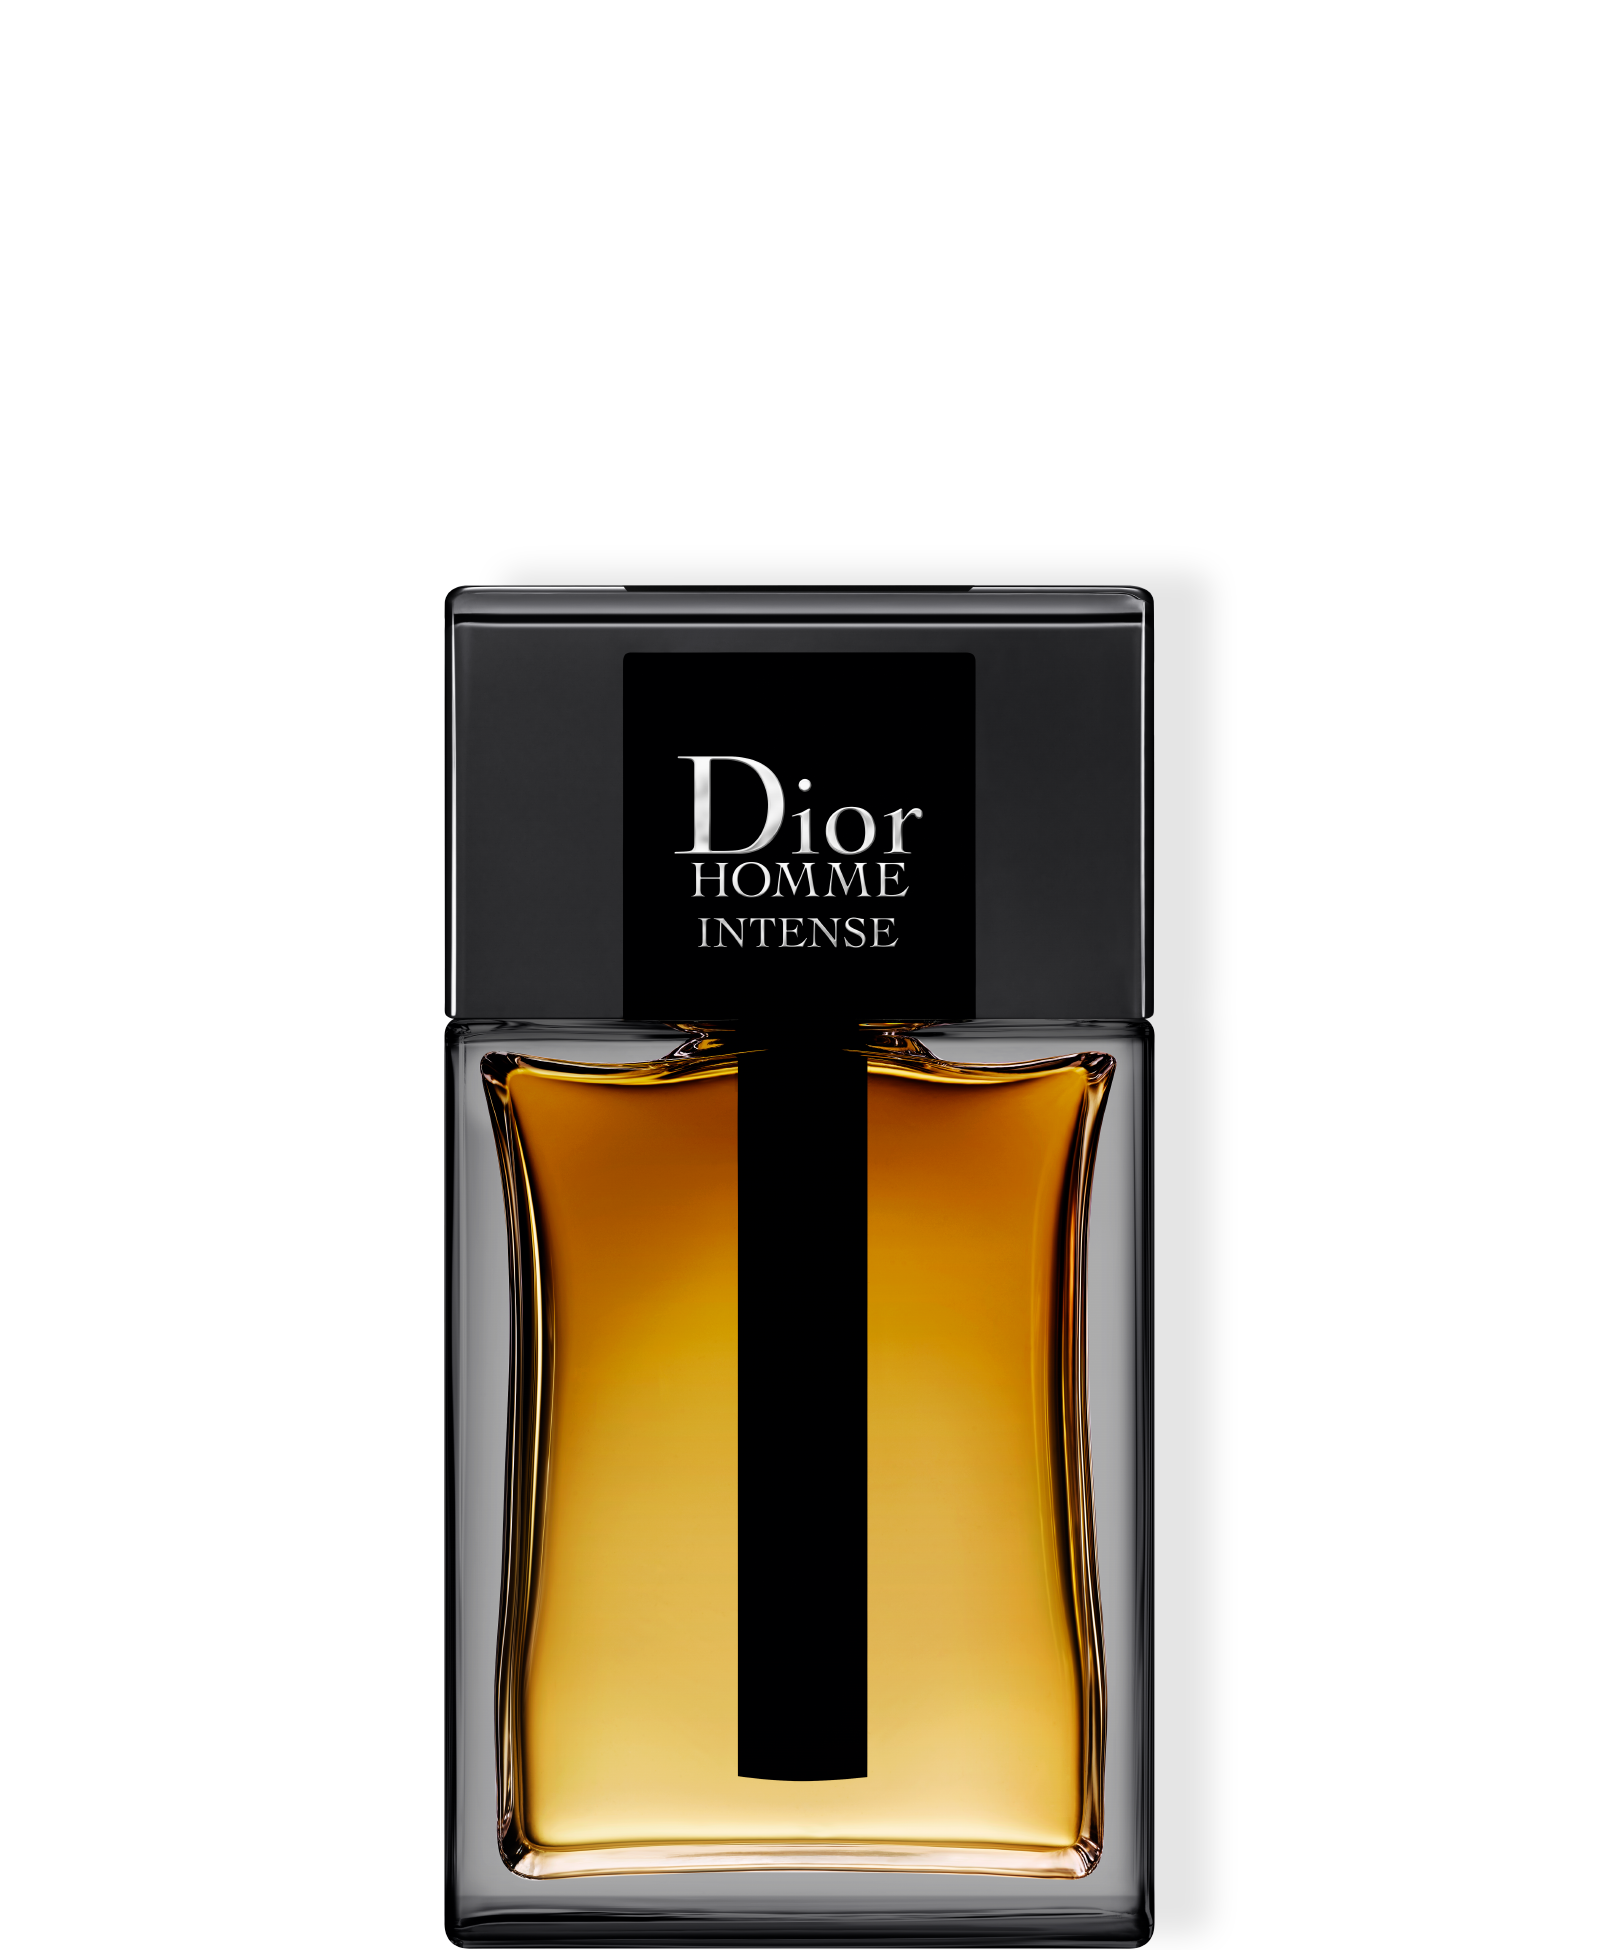 Dior Homme Intense EdP 100 ml - DIOR - KICKS